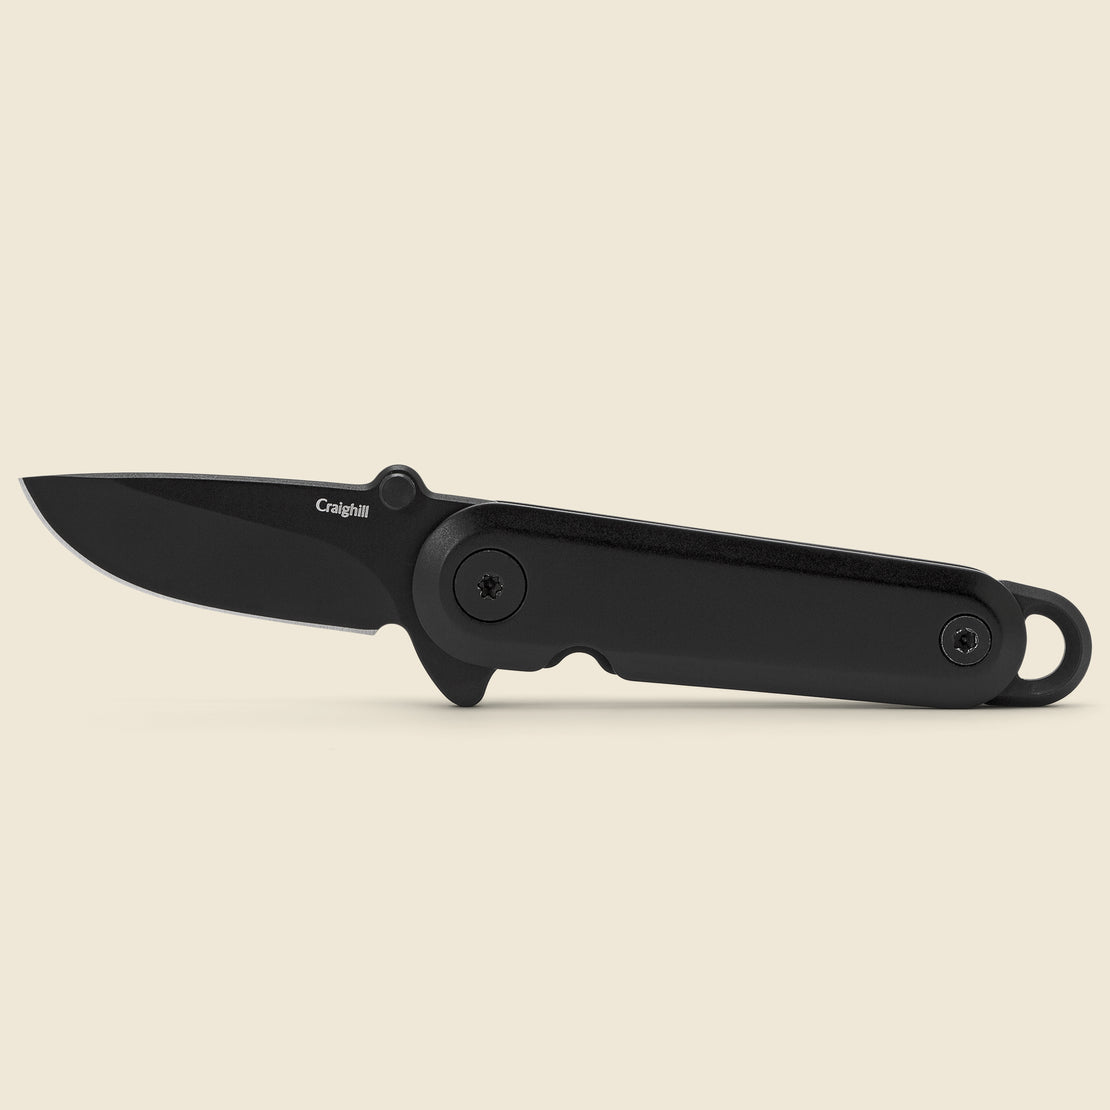 Craighill Lark Knife - Black